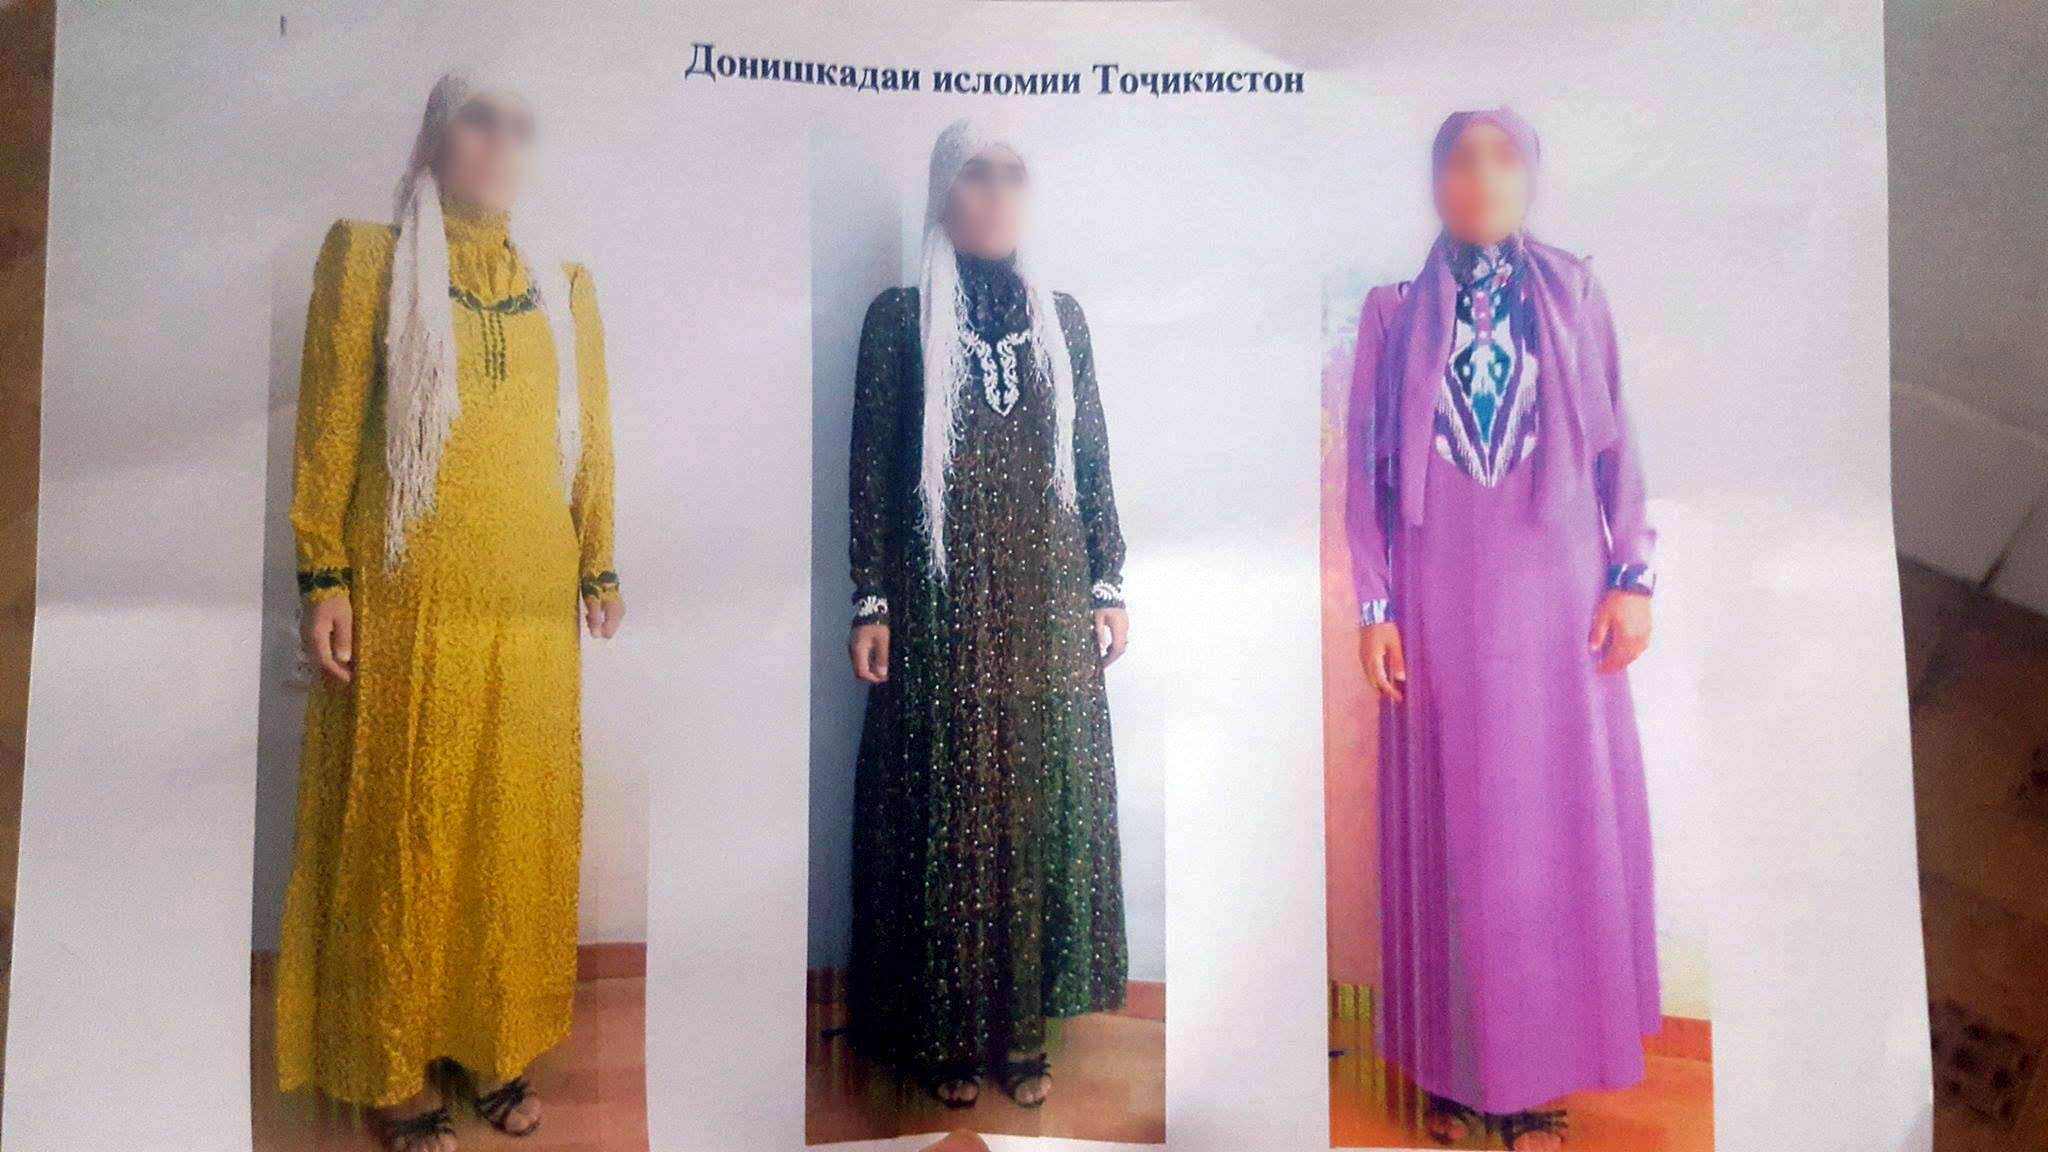 Вот такие симпатичные платья предлагают носить студенткам Исламского института